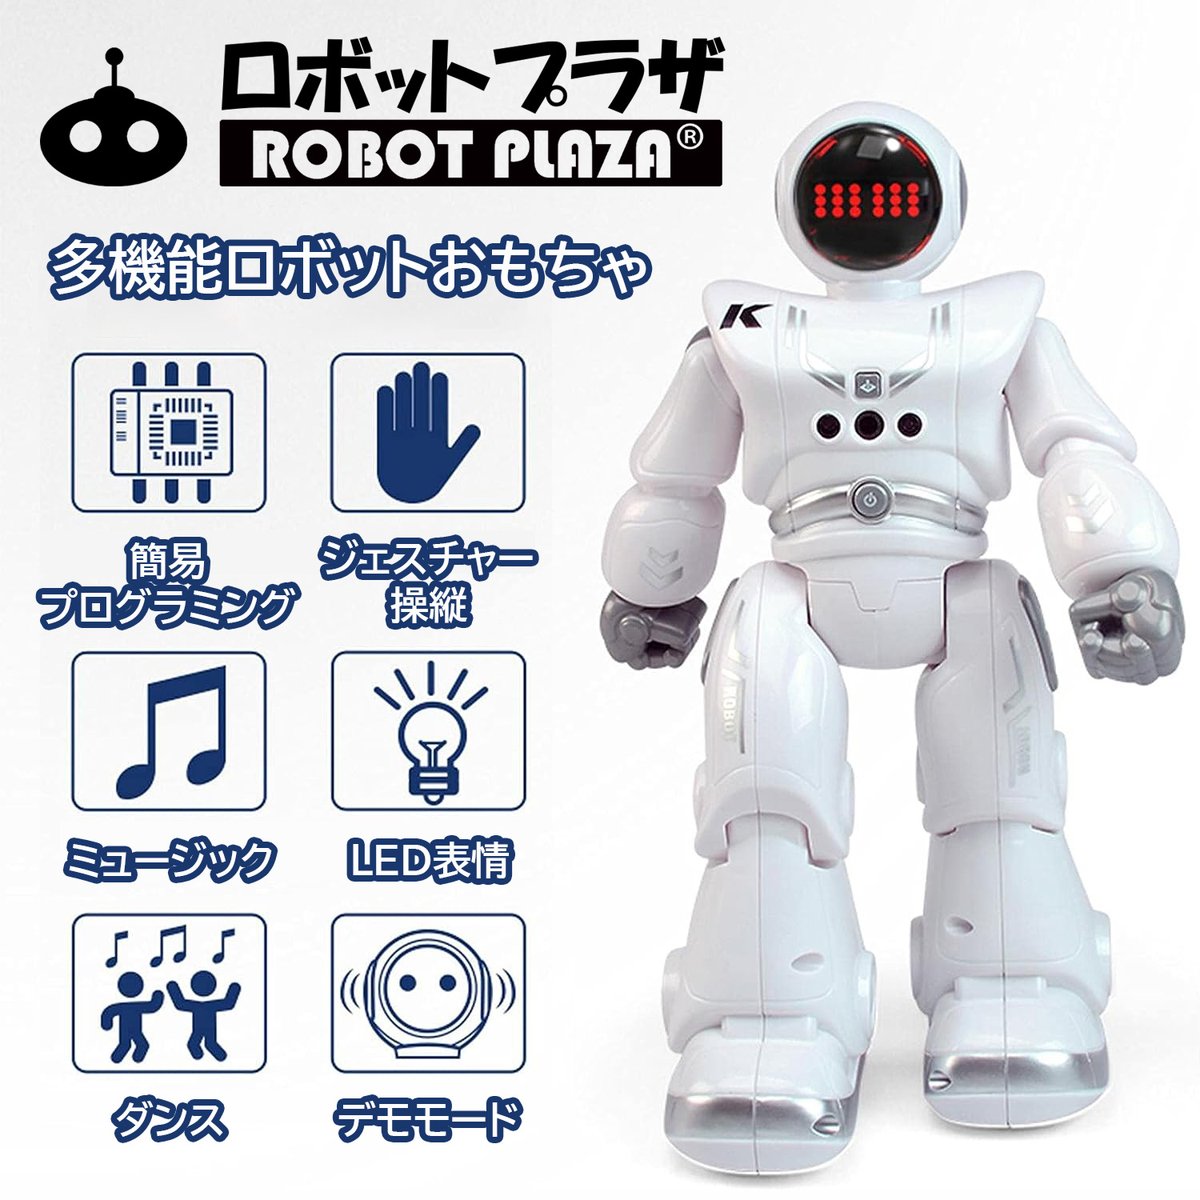 スマート ロボットおもちゃ はリモコンで操縦します。二足走行、スライド、前後左右へ、ダンス、ミュージック、簡易プログラミング、英語おっしゃべり、自動デモなど多機能搭載。子供が喜びます。